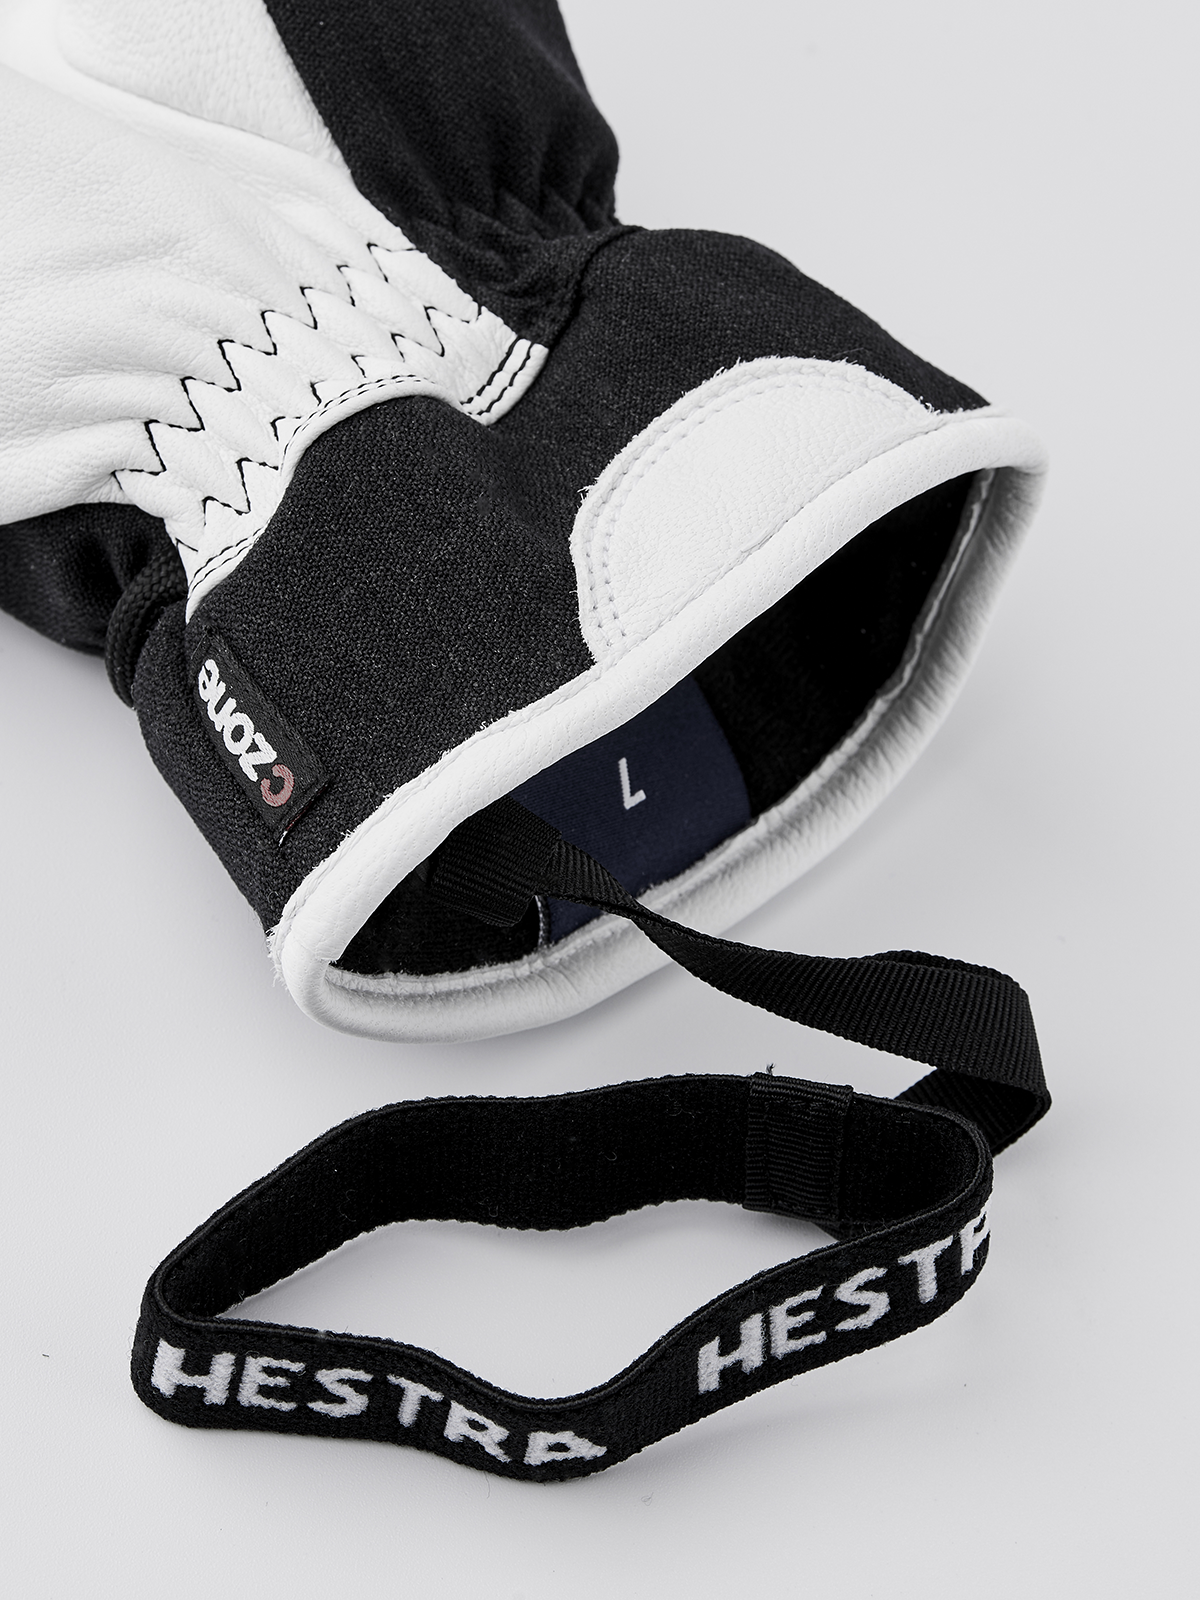 Voss CZone Mitt - Black | Hestra Gloves